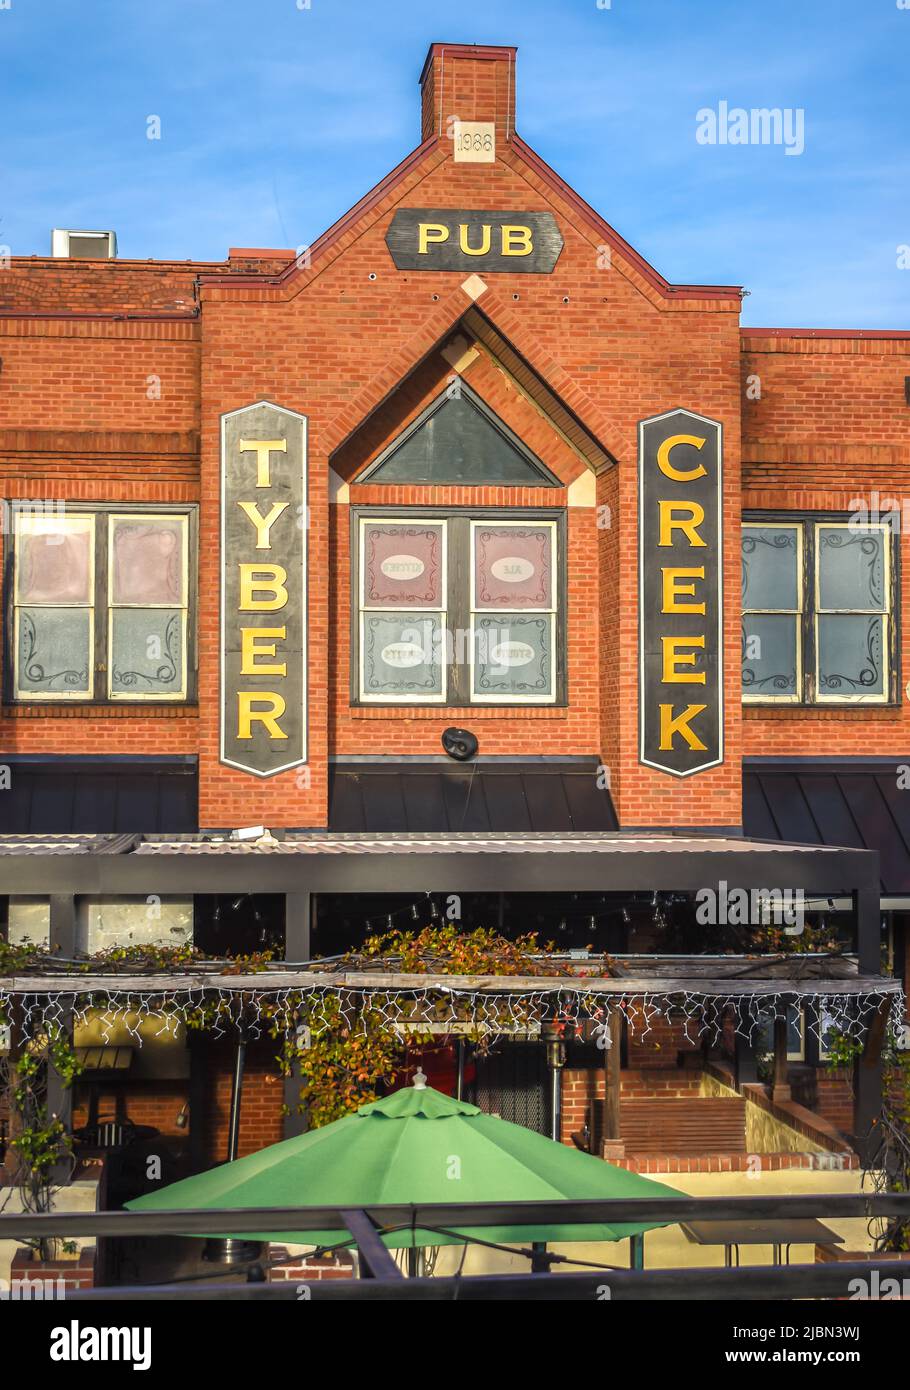 Tyber Creek Pub's Außenfassade Marke und Logo Signage mit blauem Himmel, reflektierenden Glasfenstern, Terrasse und grünem Regenschirm in Charlotte, NC. Stockfoto